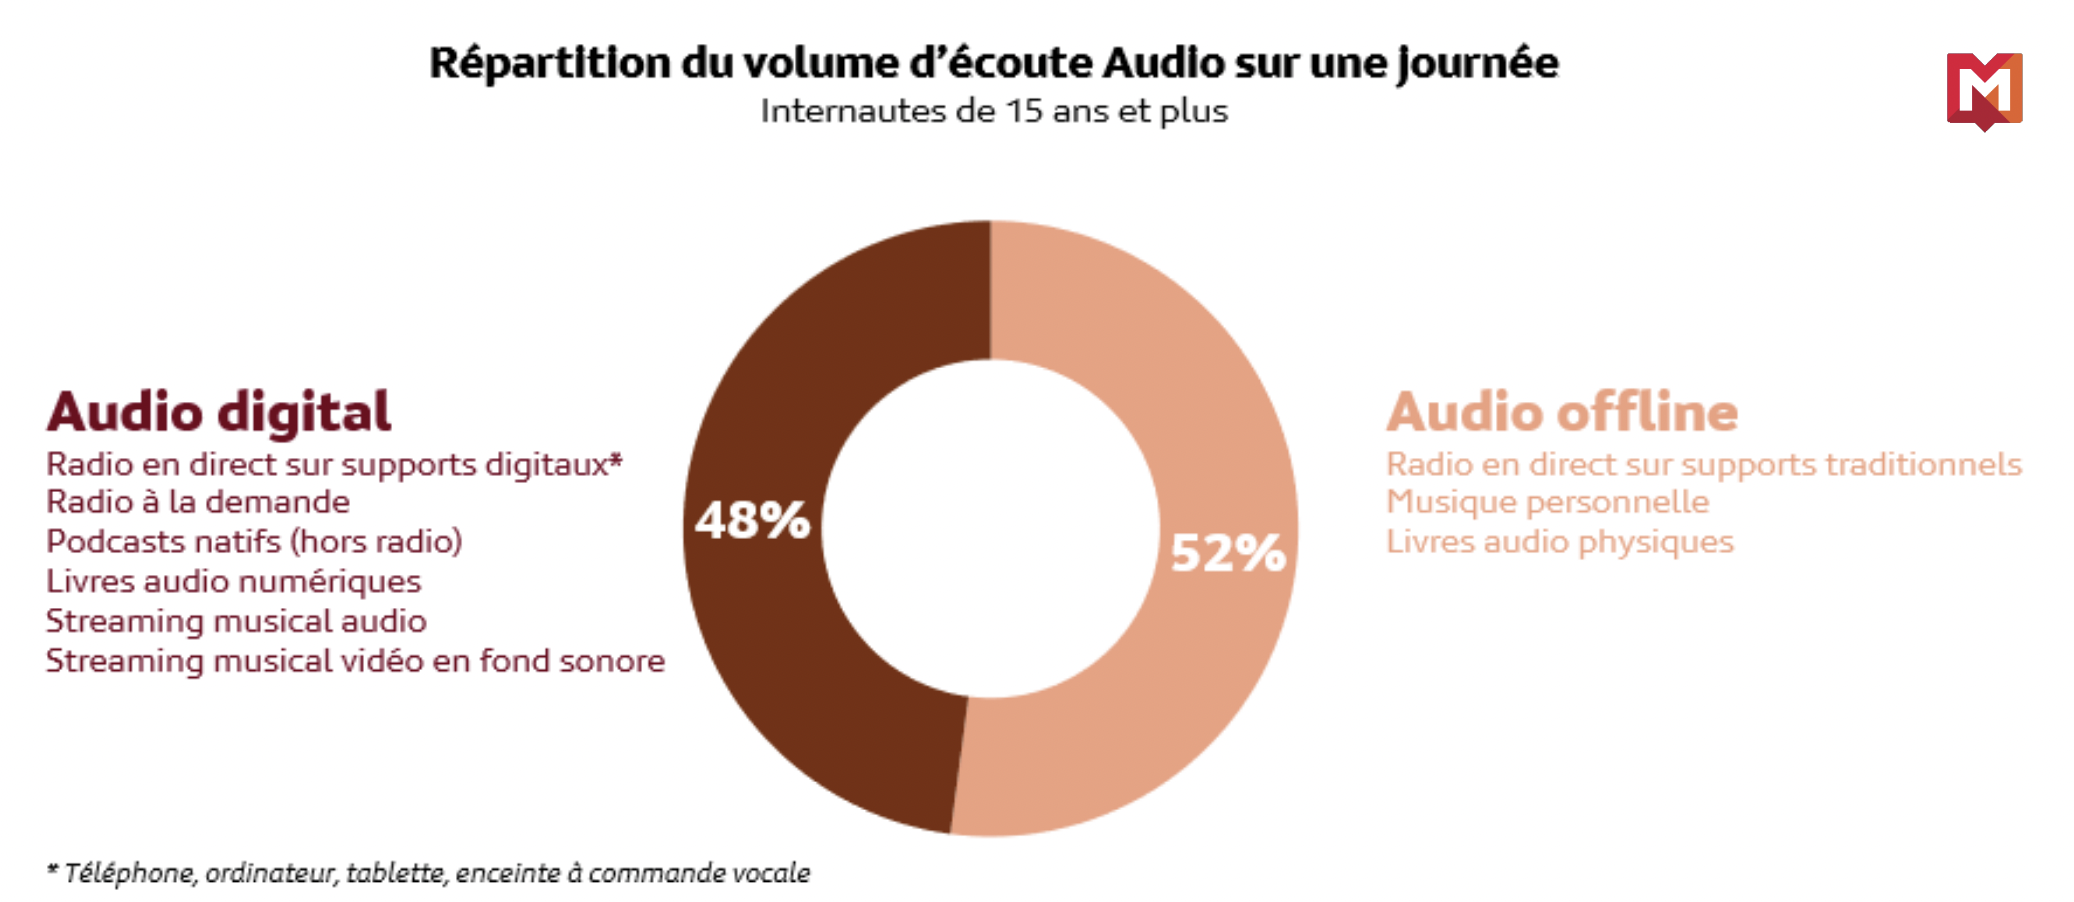 Source : Médiamétrie - Global Audio 2022 - Base Internautes 15 ans et plus - Copyright Médiamétrie - Tous droits réservés